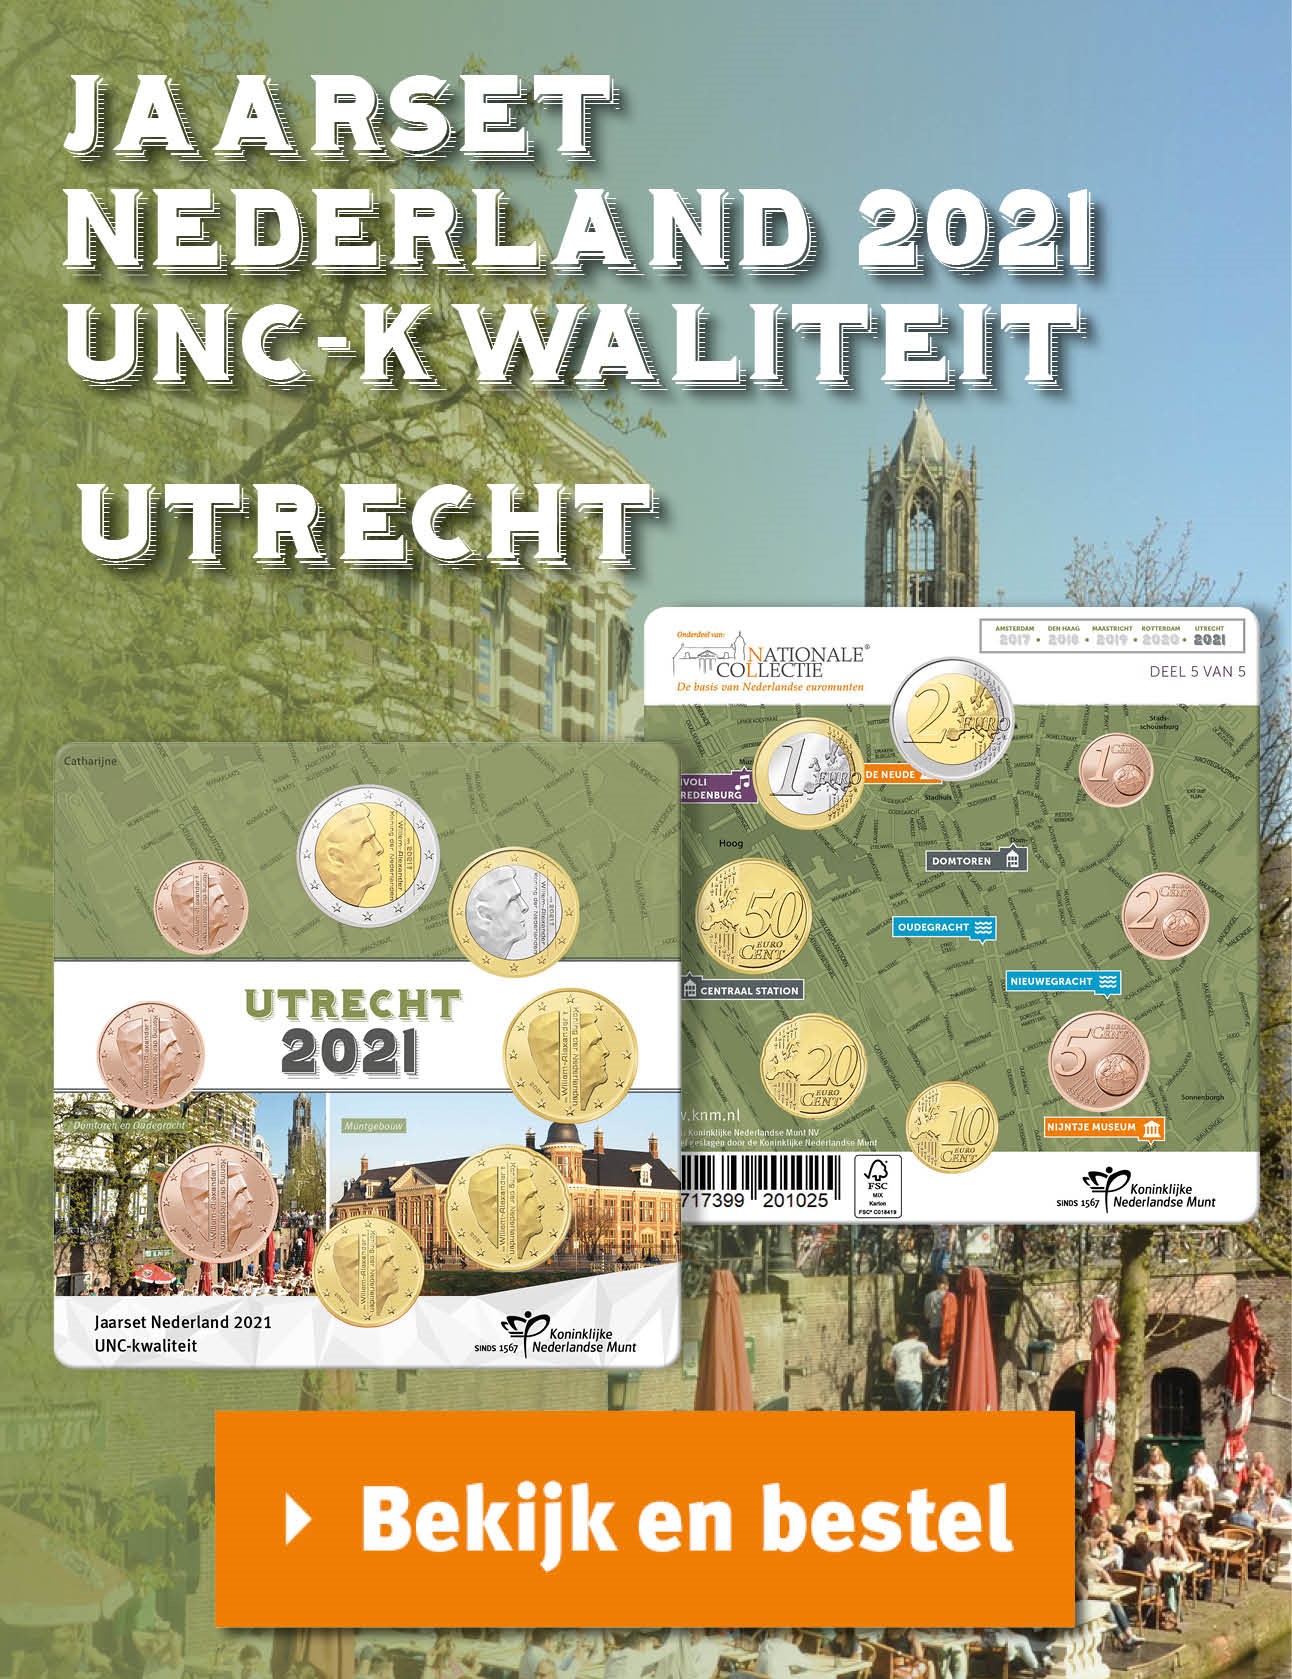 Bekijk en bestel: Jaarset Nederland 2021 UNC-kwaliteit